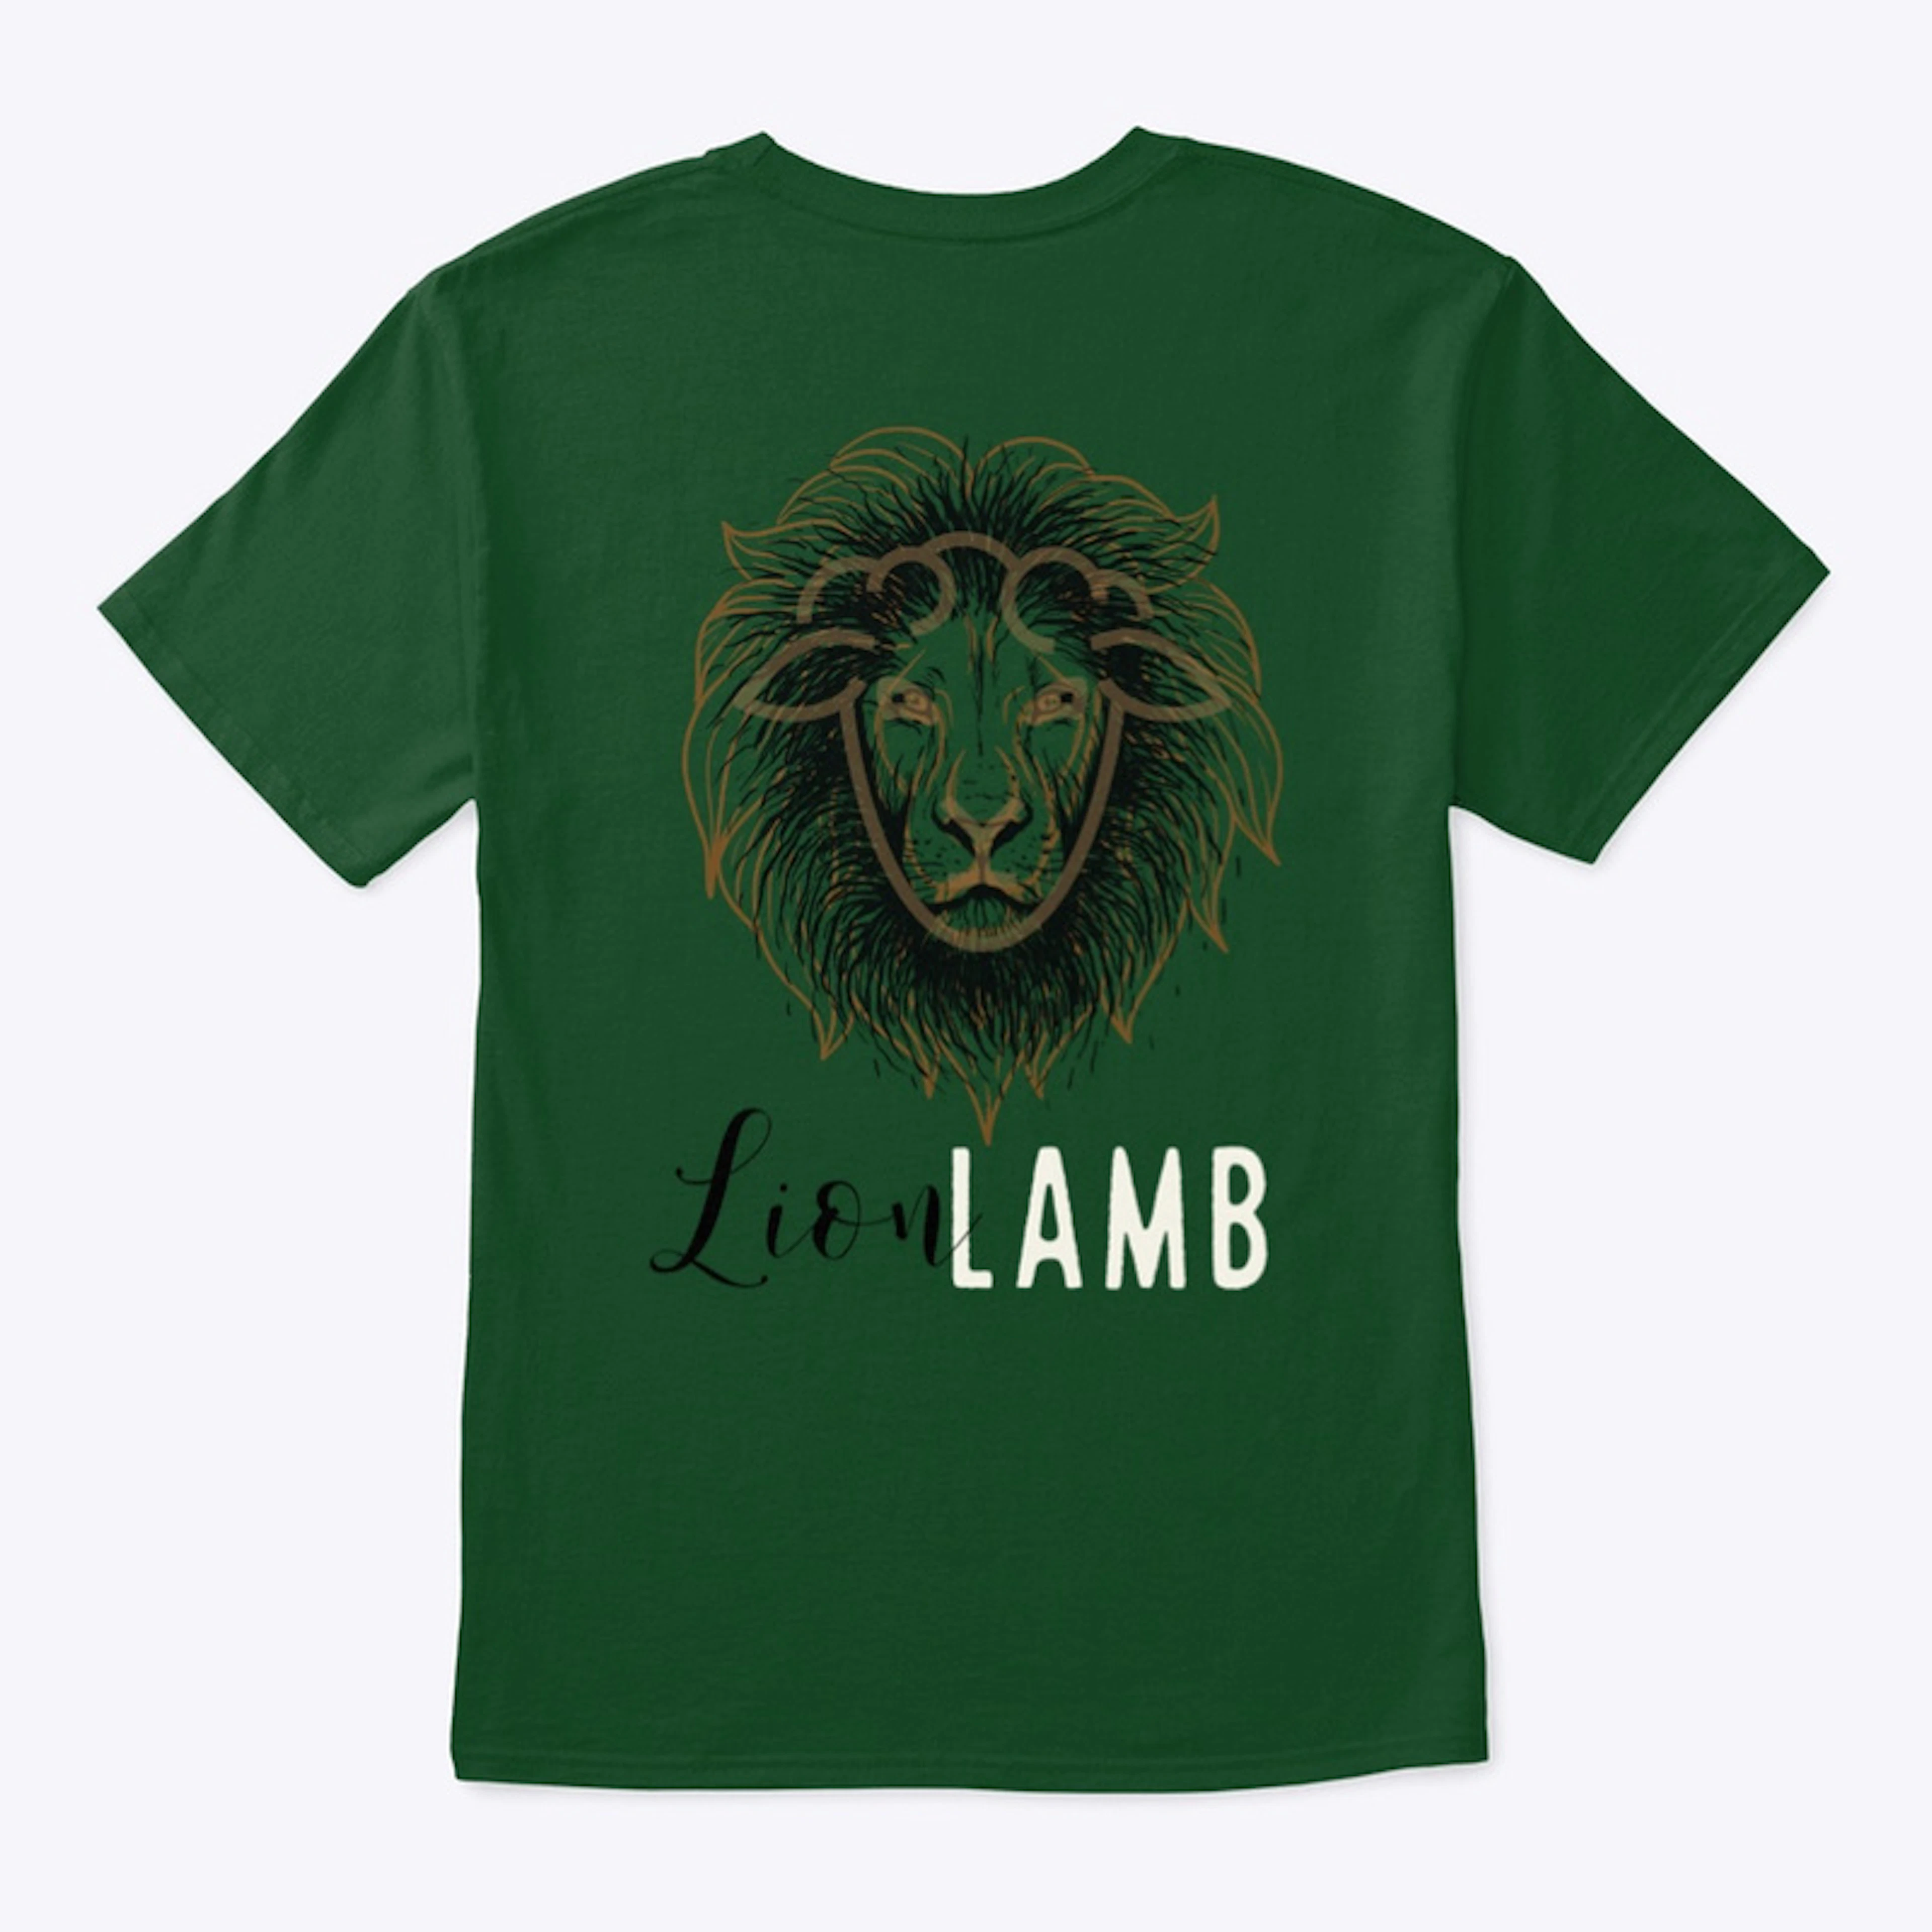 LION LAMB